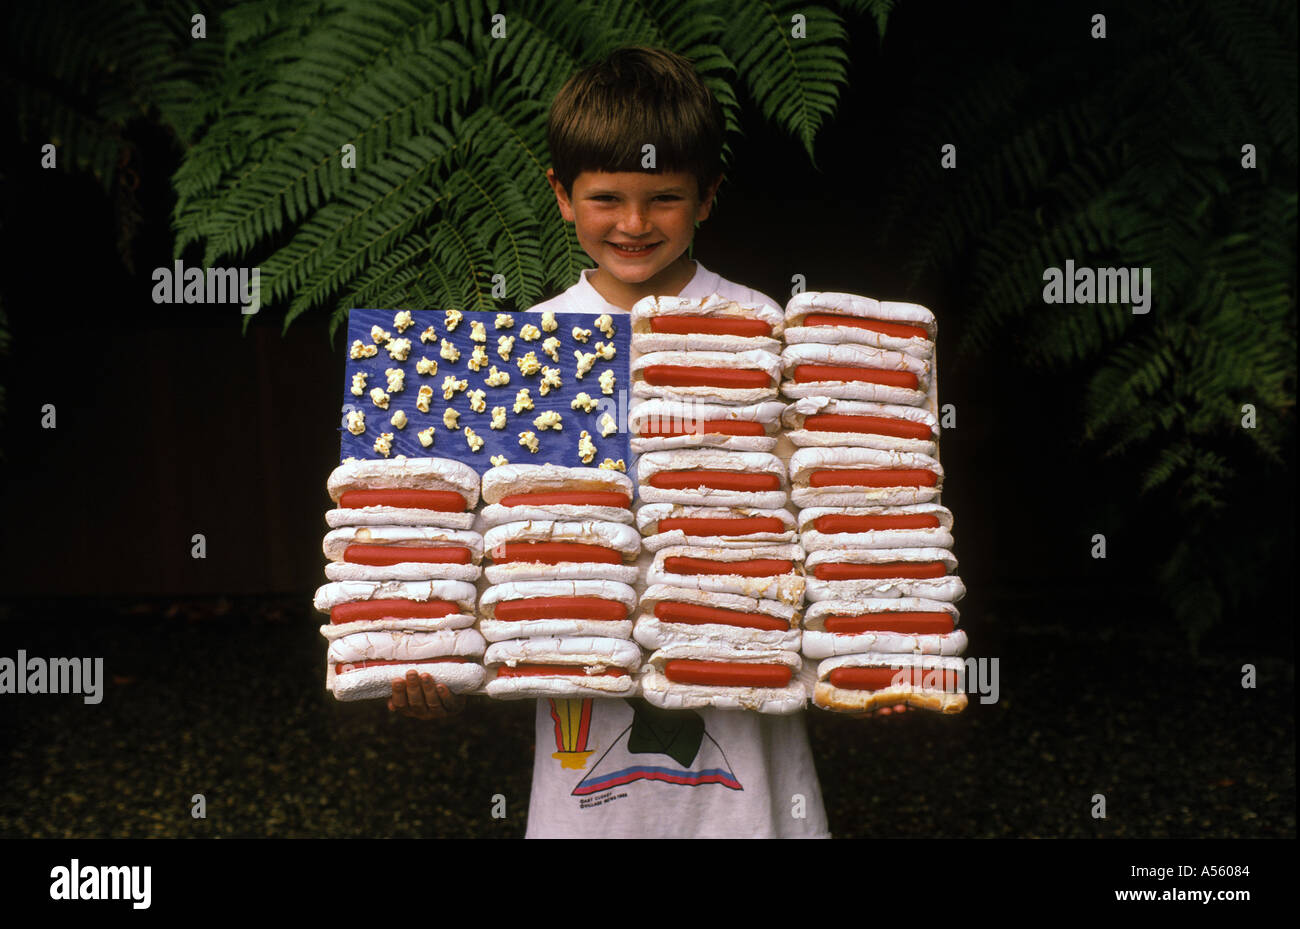 zehn Jahre alter Junge amerikanische Flagge aus Hotdogs Brötchen und Popcorn gemacht Stockfoto